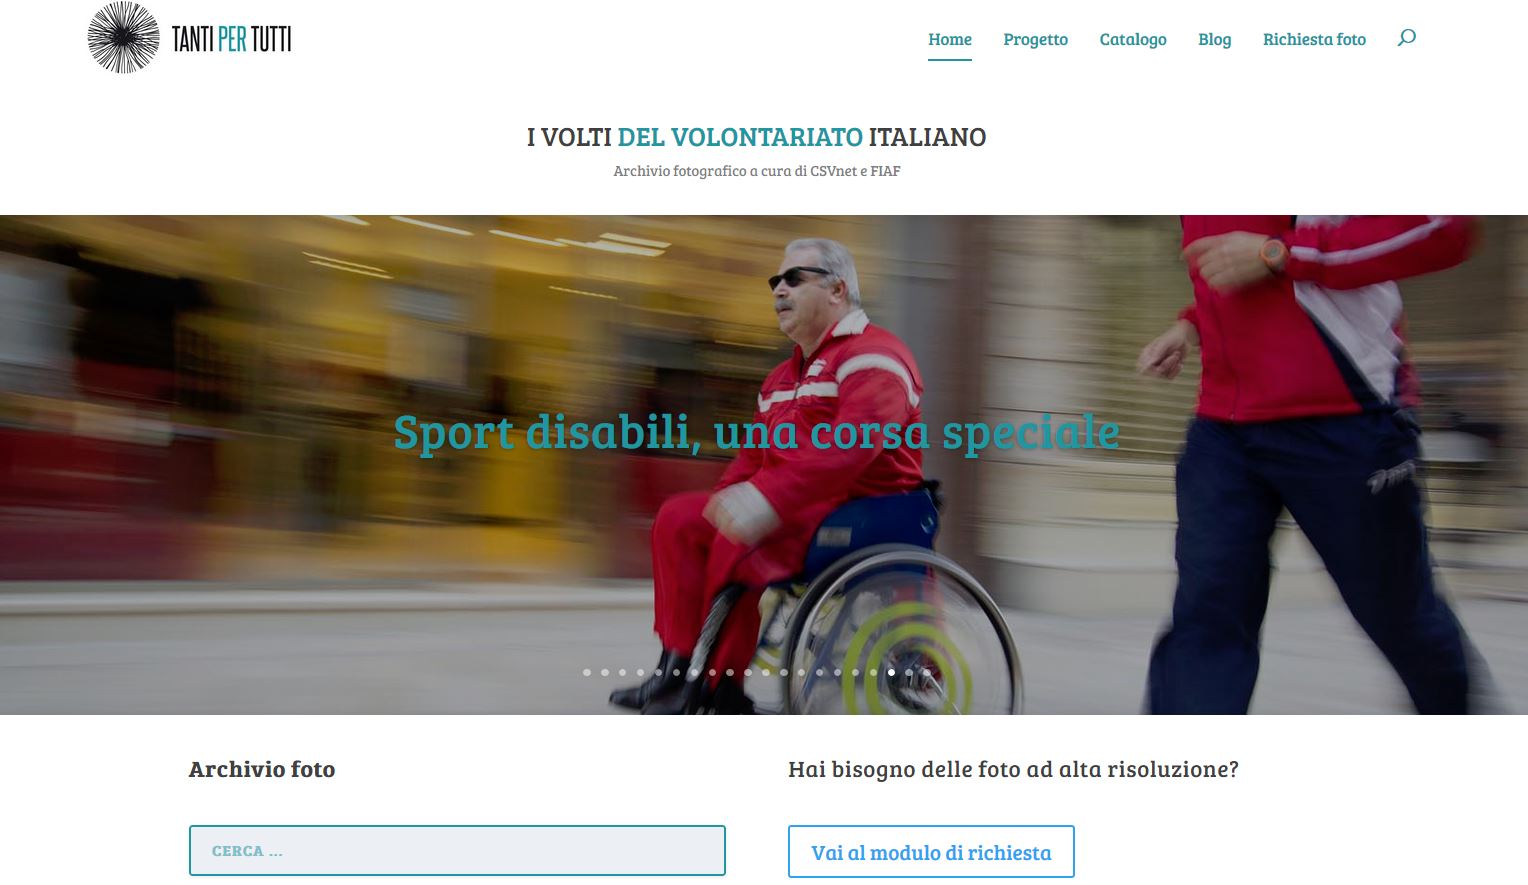 CSVnet – FIAF – “Tanti per tutti – I volti del volontariato italiano” – sito web